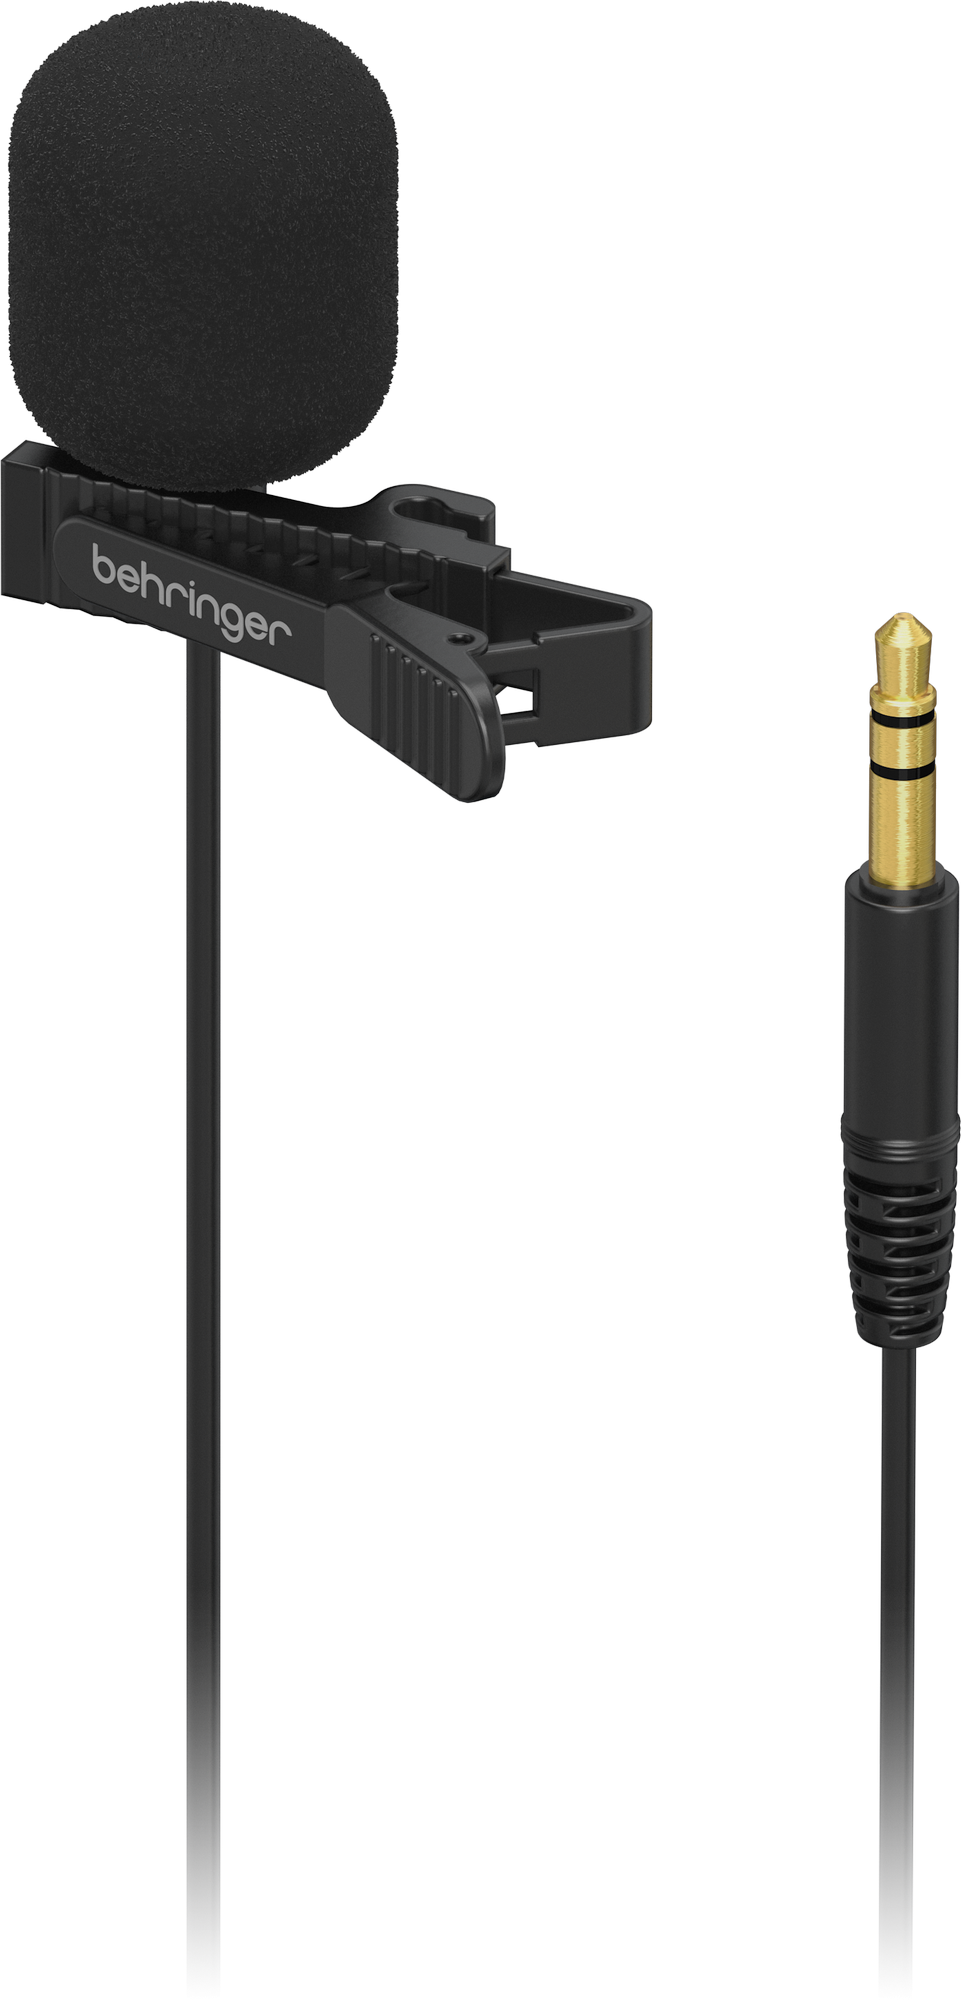 Behringer BC LAV Go конденсаторный петличный микрофон, разъем 3.5 mm TRS, переходник на 3.5 mm TRRS, с ветрозащитой и клипсой, кабель 1,2 м, черный